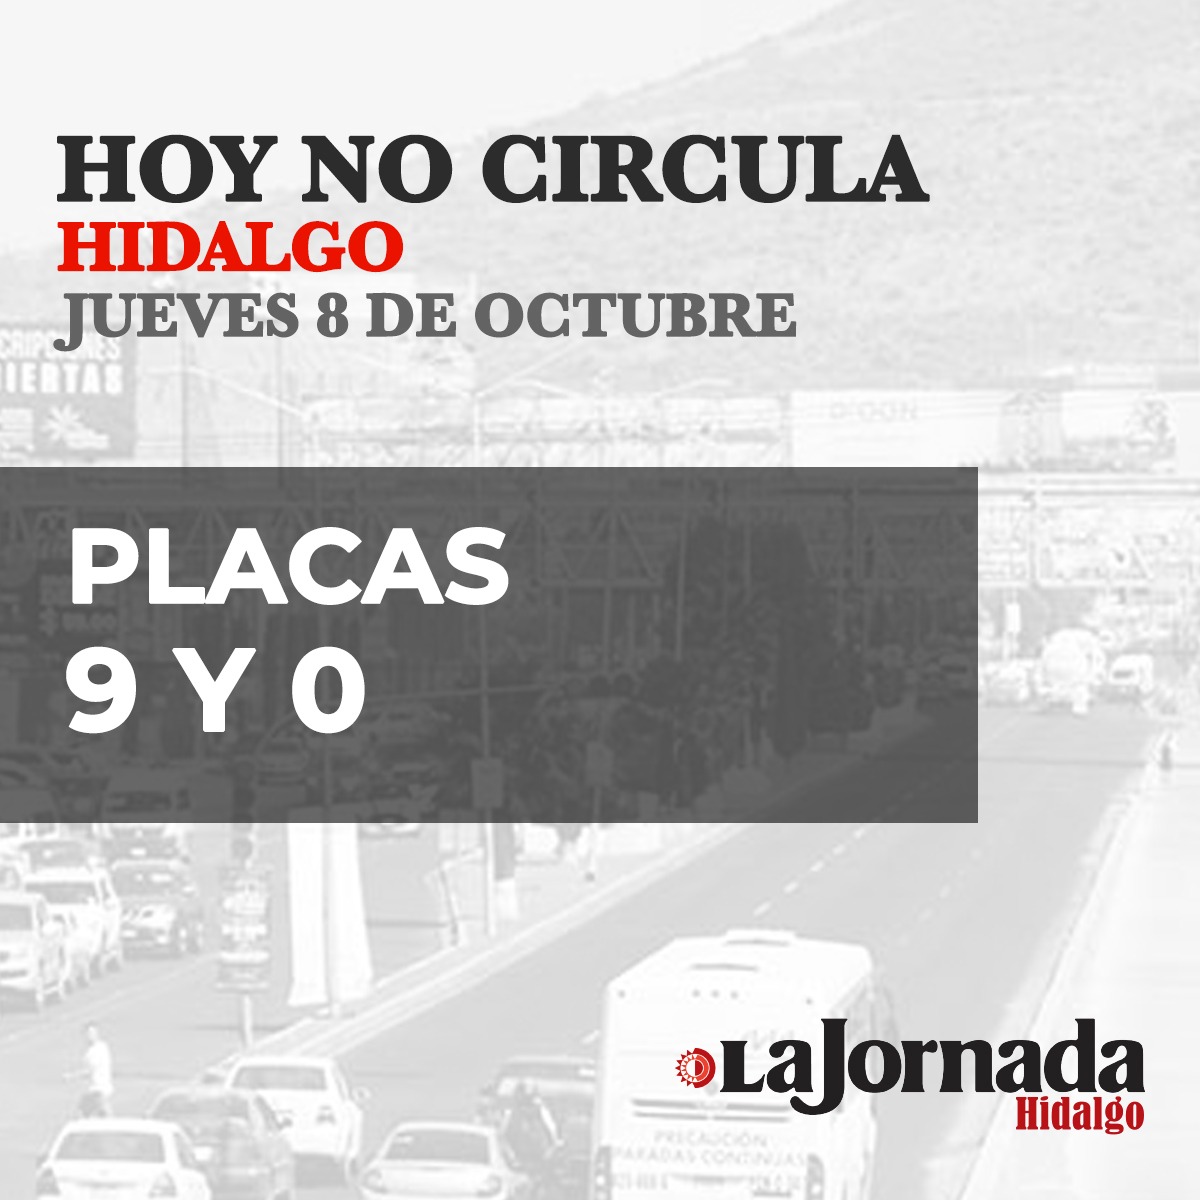 Hoy No Circula Hidalgo jueves 8 de octubre